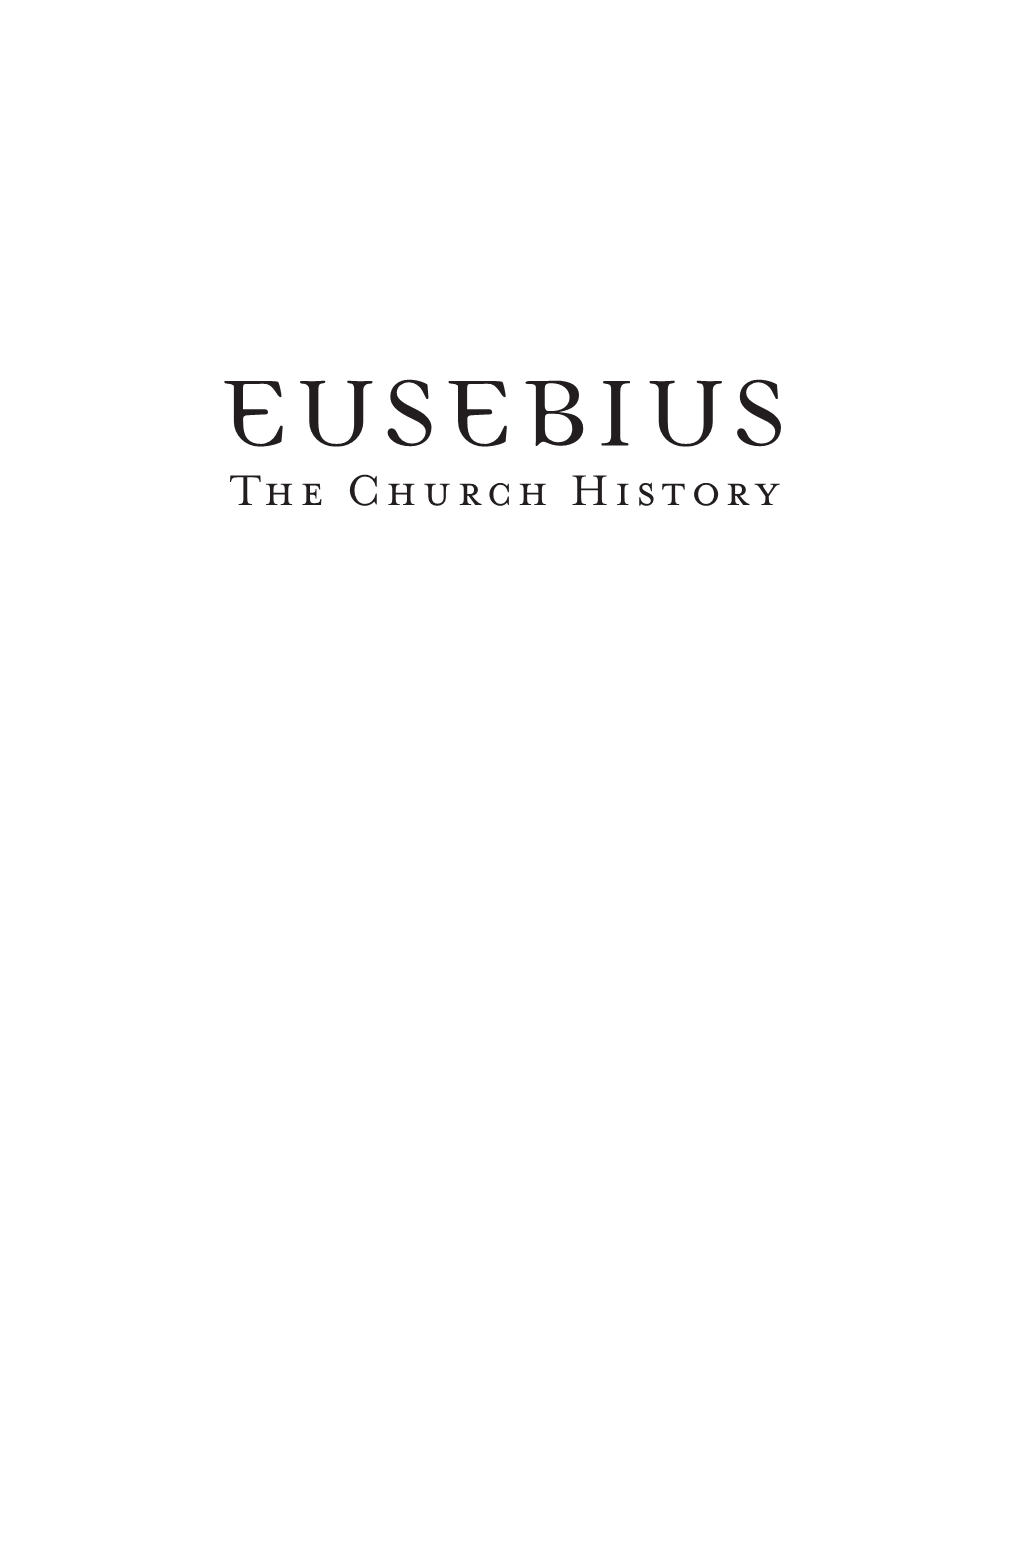 Eusebius 01-20.Indd